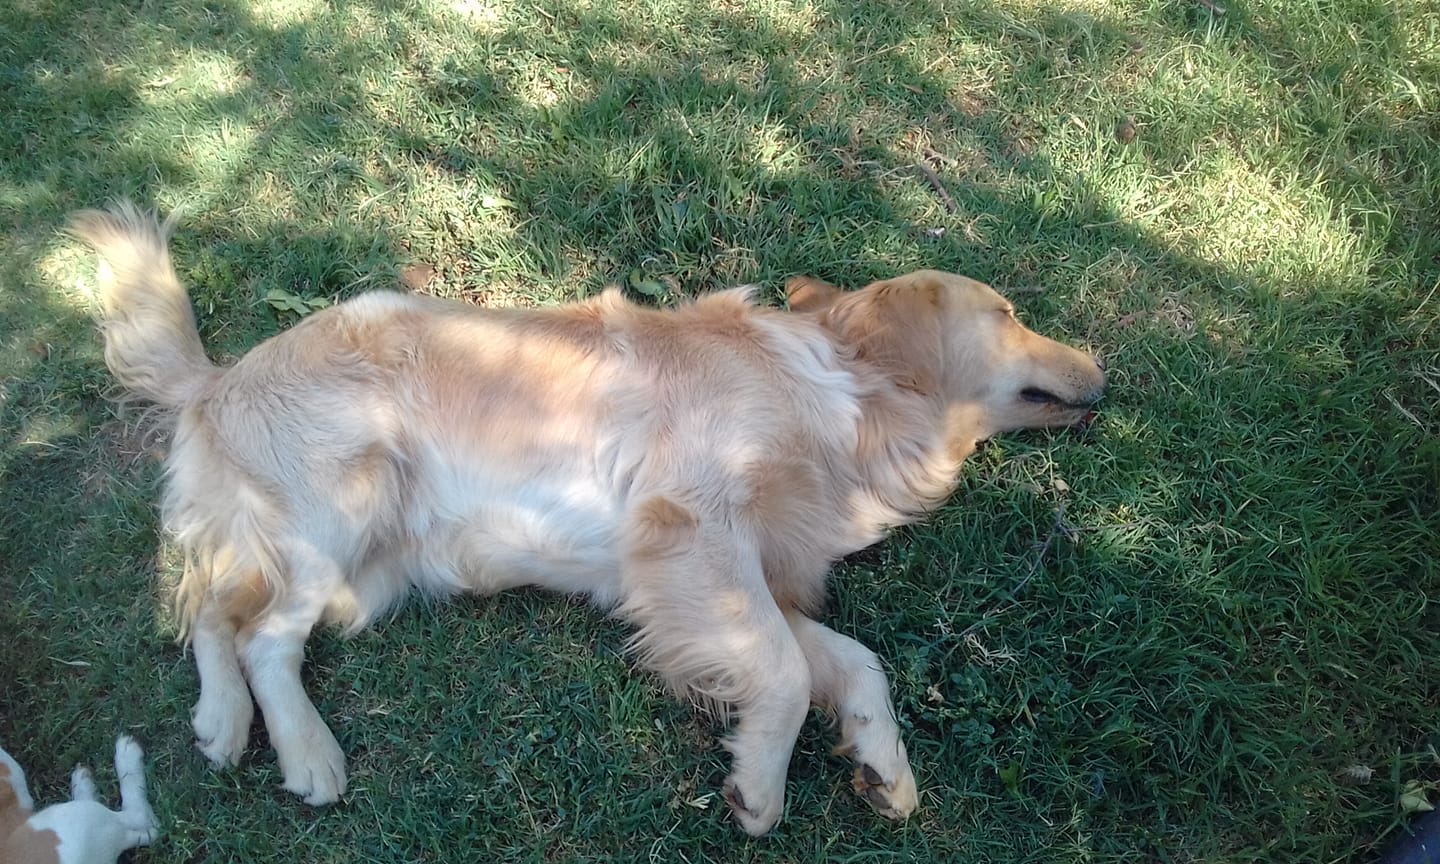 A Golden Retriever lying on the grass